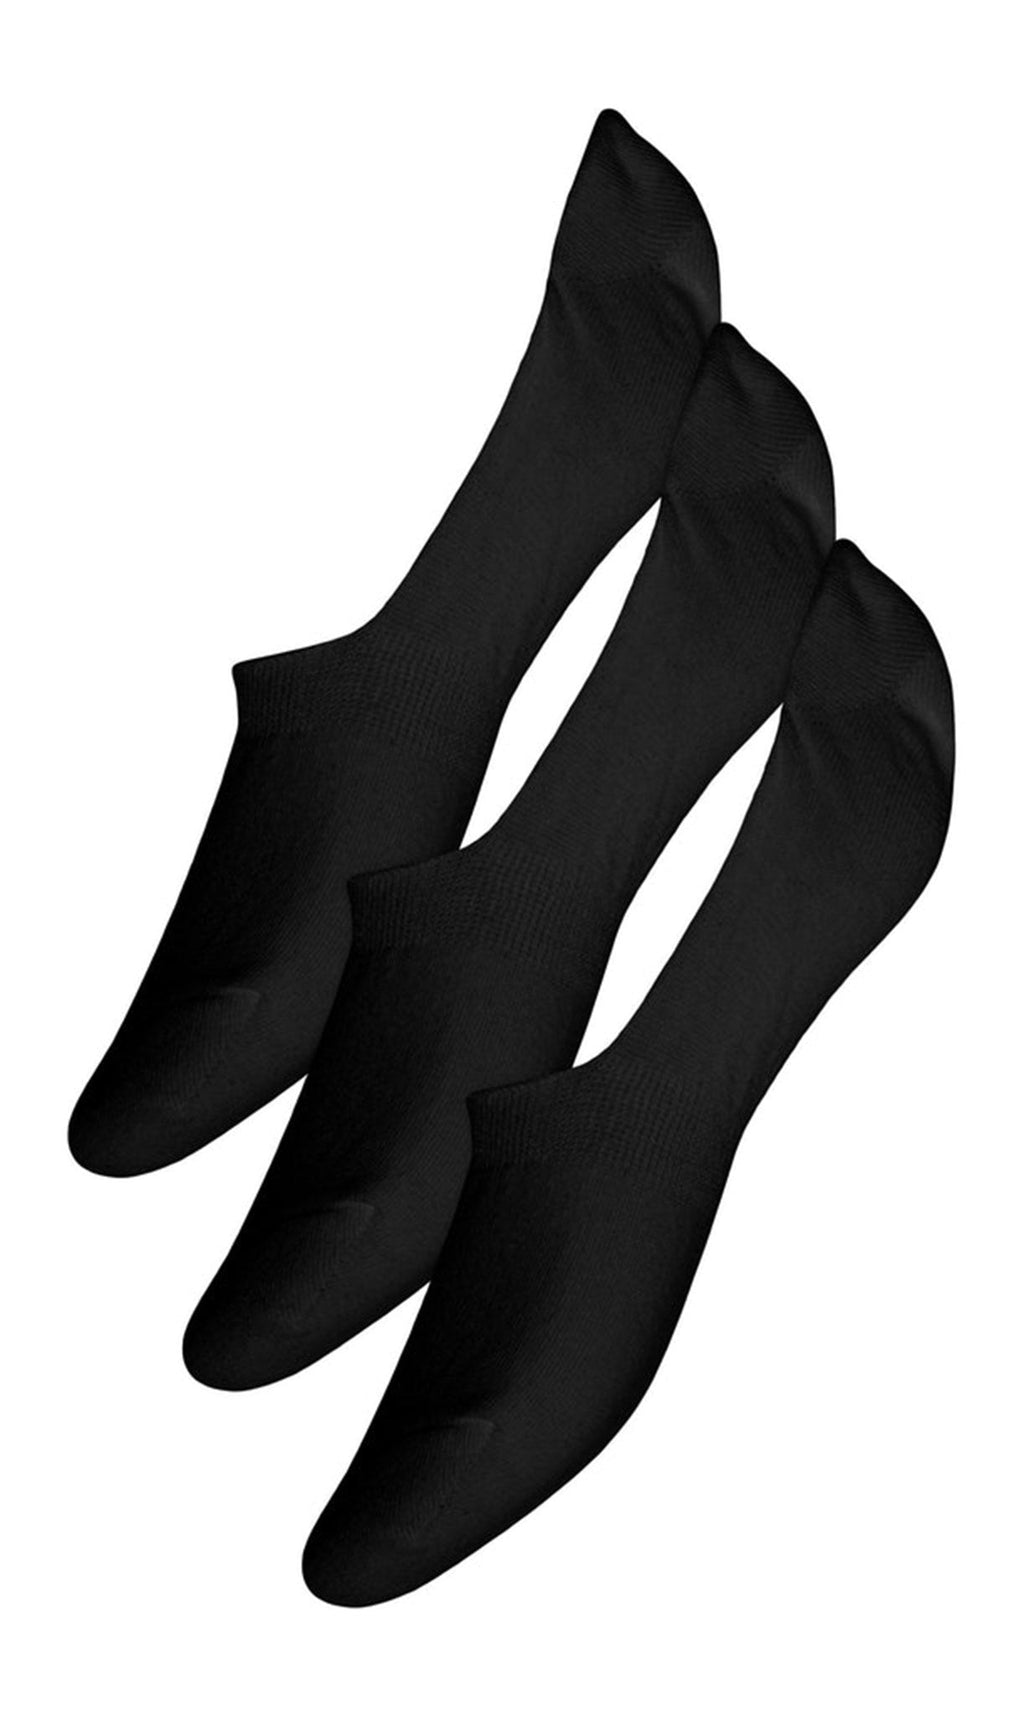 „Cindy“ kojinės 3 pakuotės - juodos spalvos